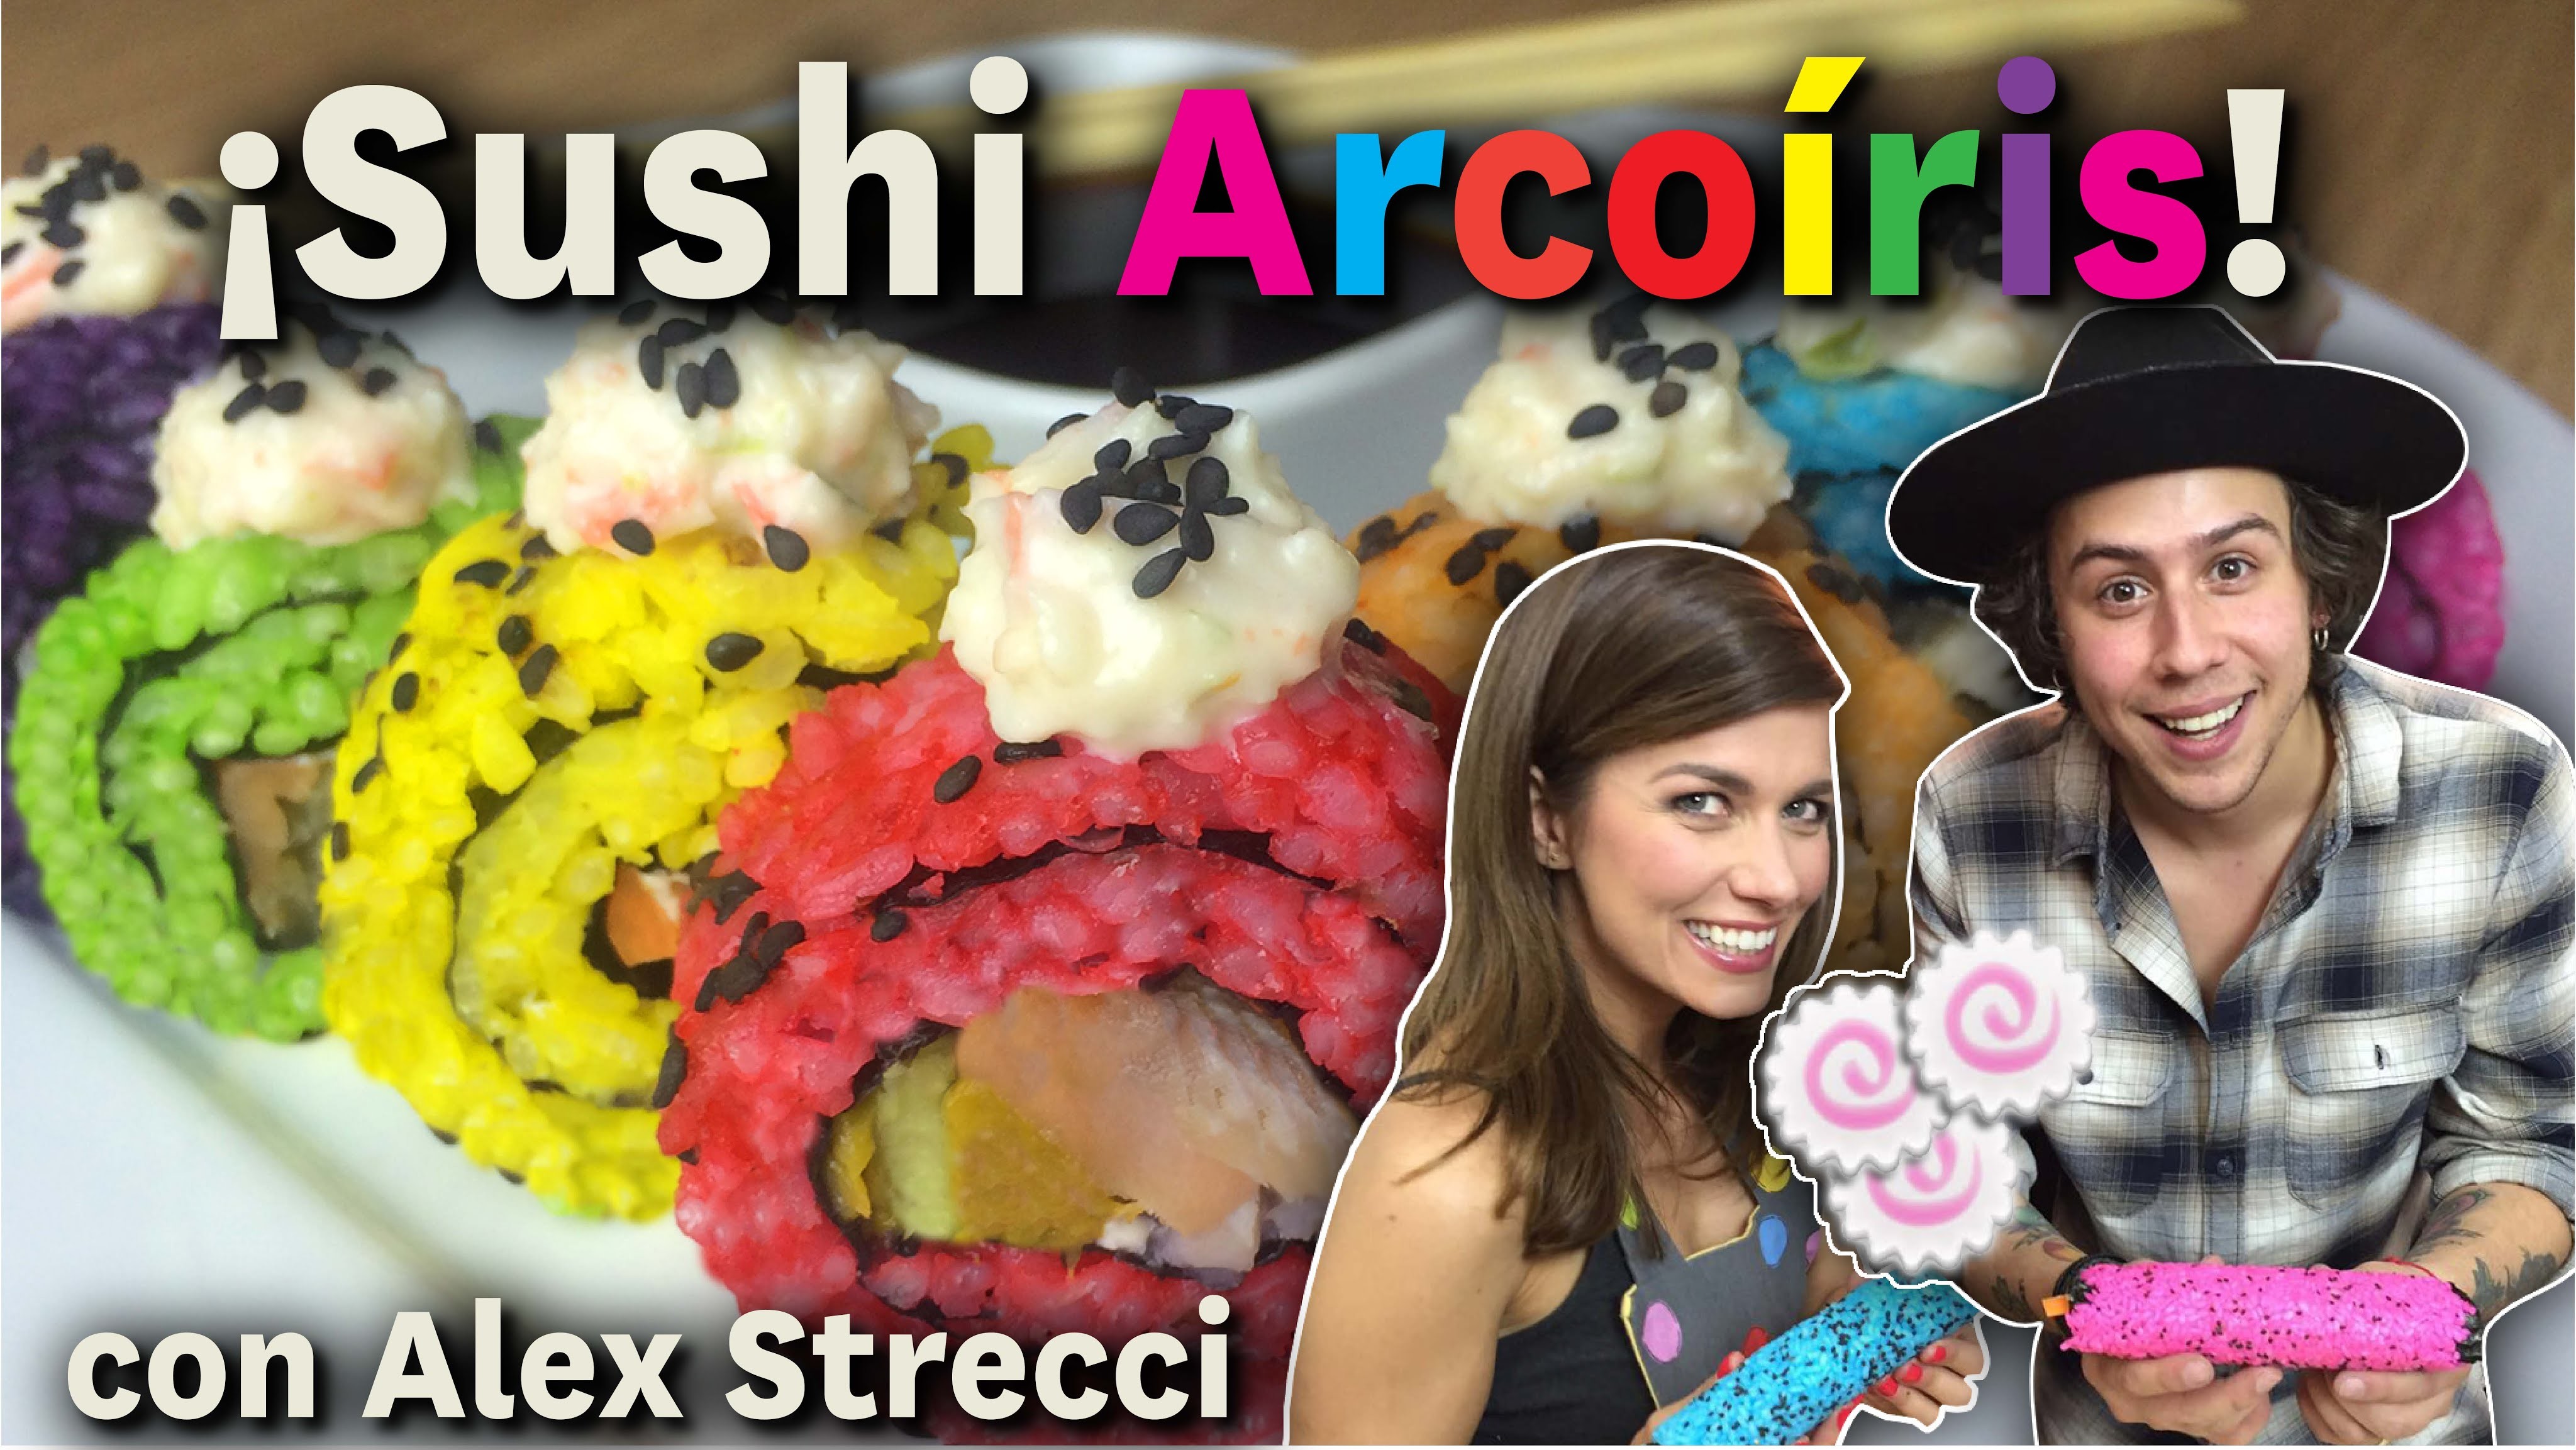 ¡Sushi Arcoíris! con Alex Strecci. Dacosta´s Bakery